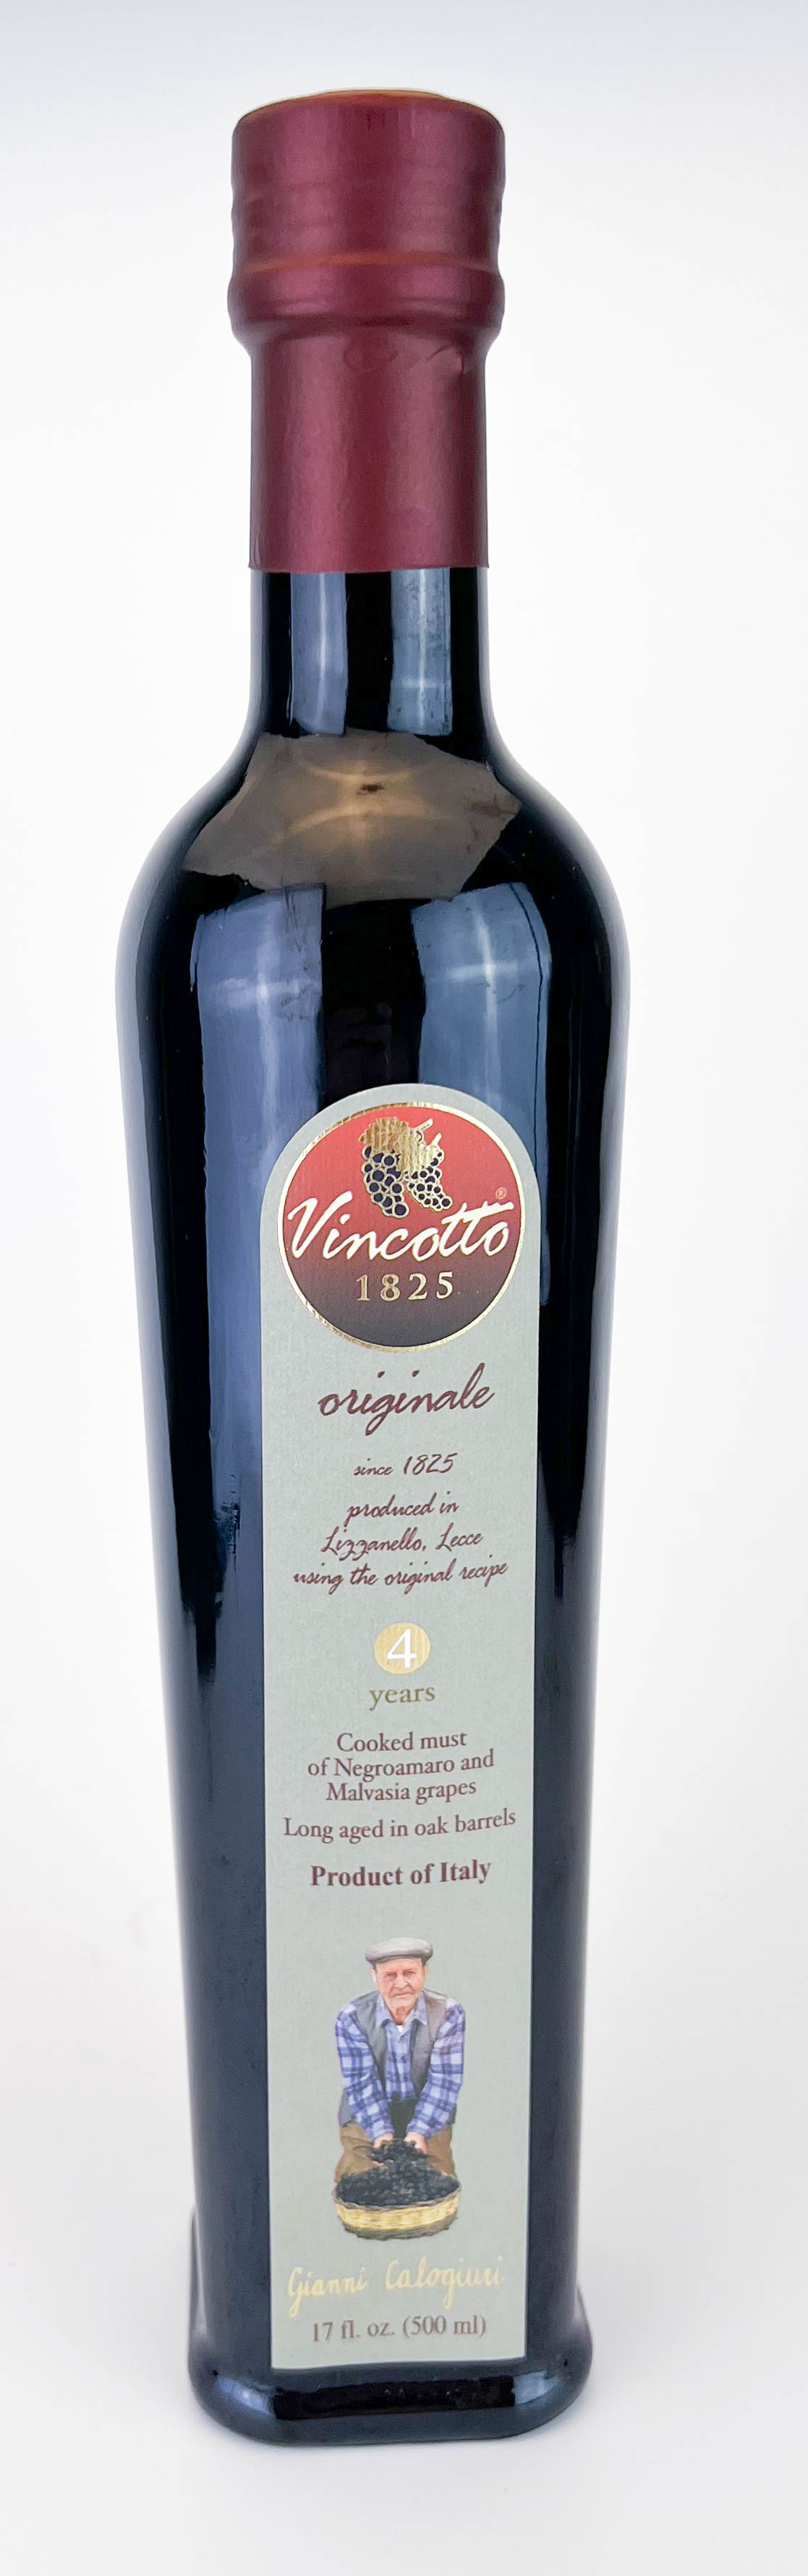 Vincotto ® ORIGINALE bouteille de 500ml